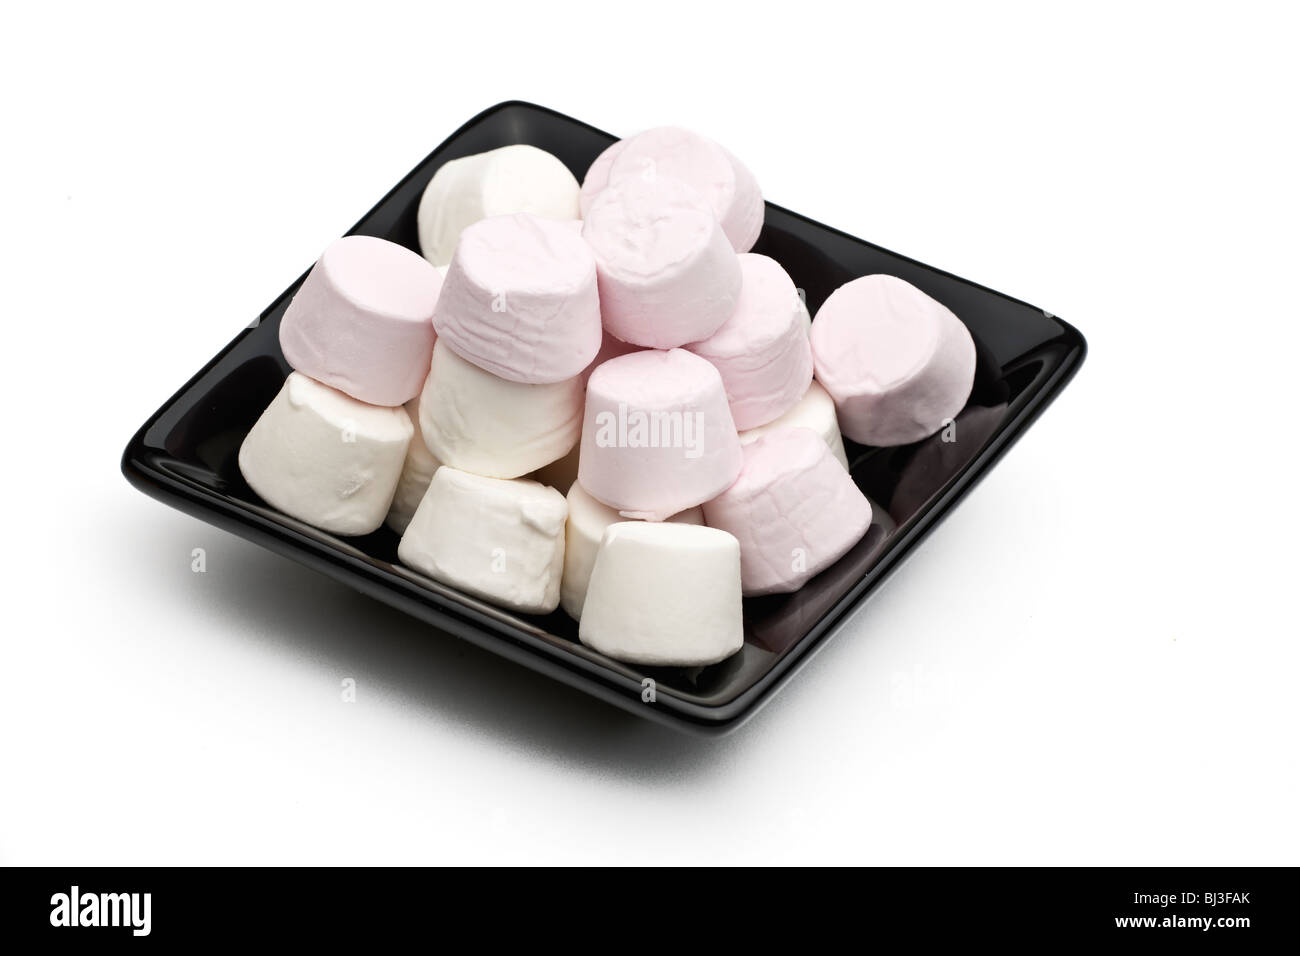 Quadrato nero piastra ceramica riempito con rosa e bianco marshmallow Foto Stock